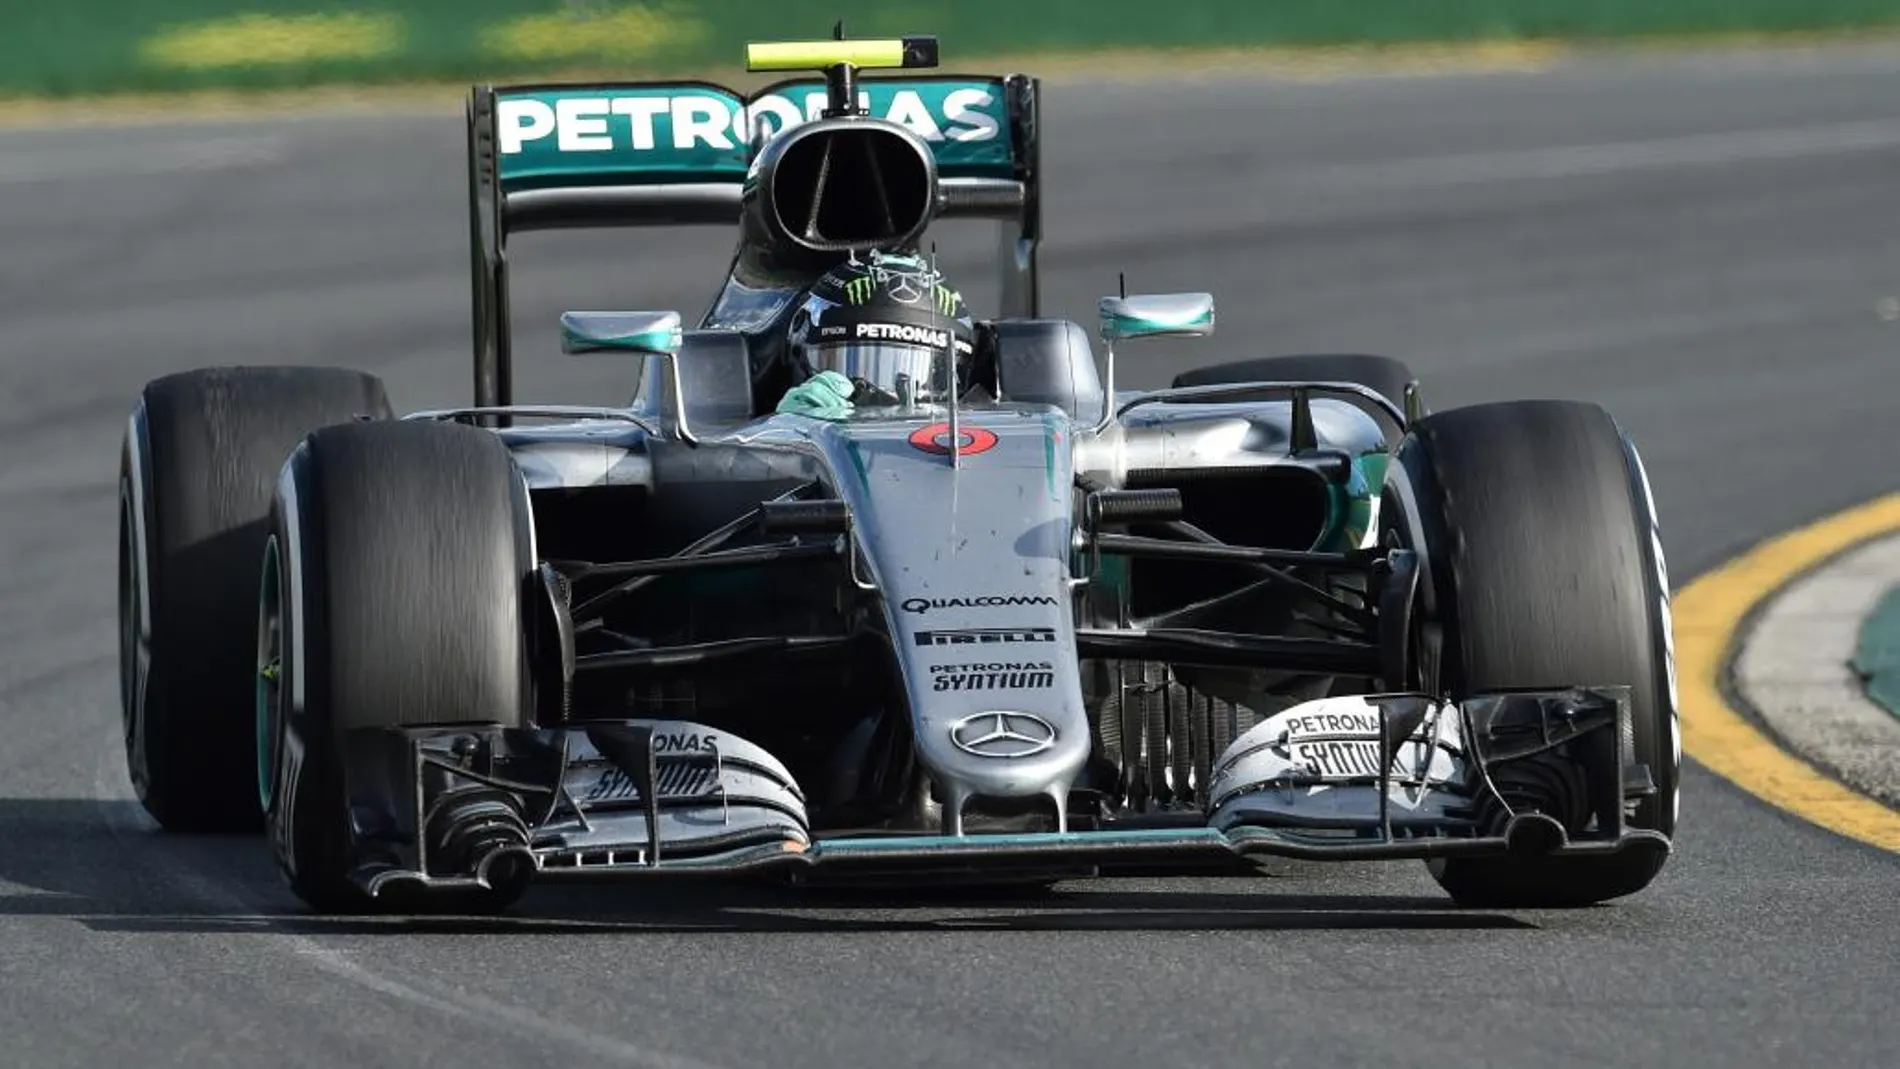 El aleman Nico Rosberg durante la carrera